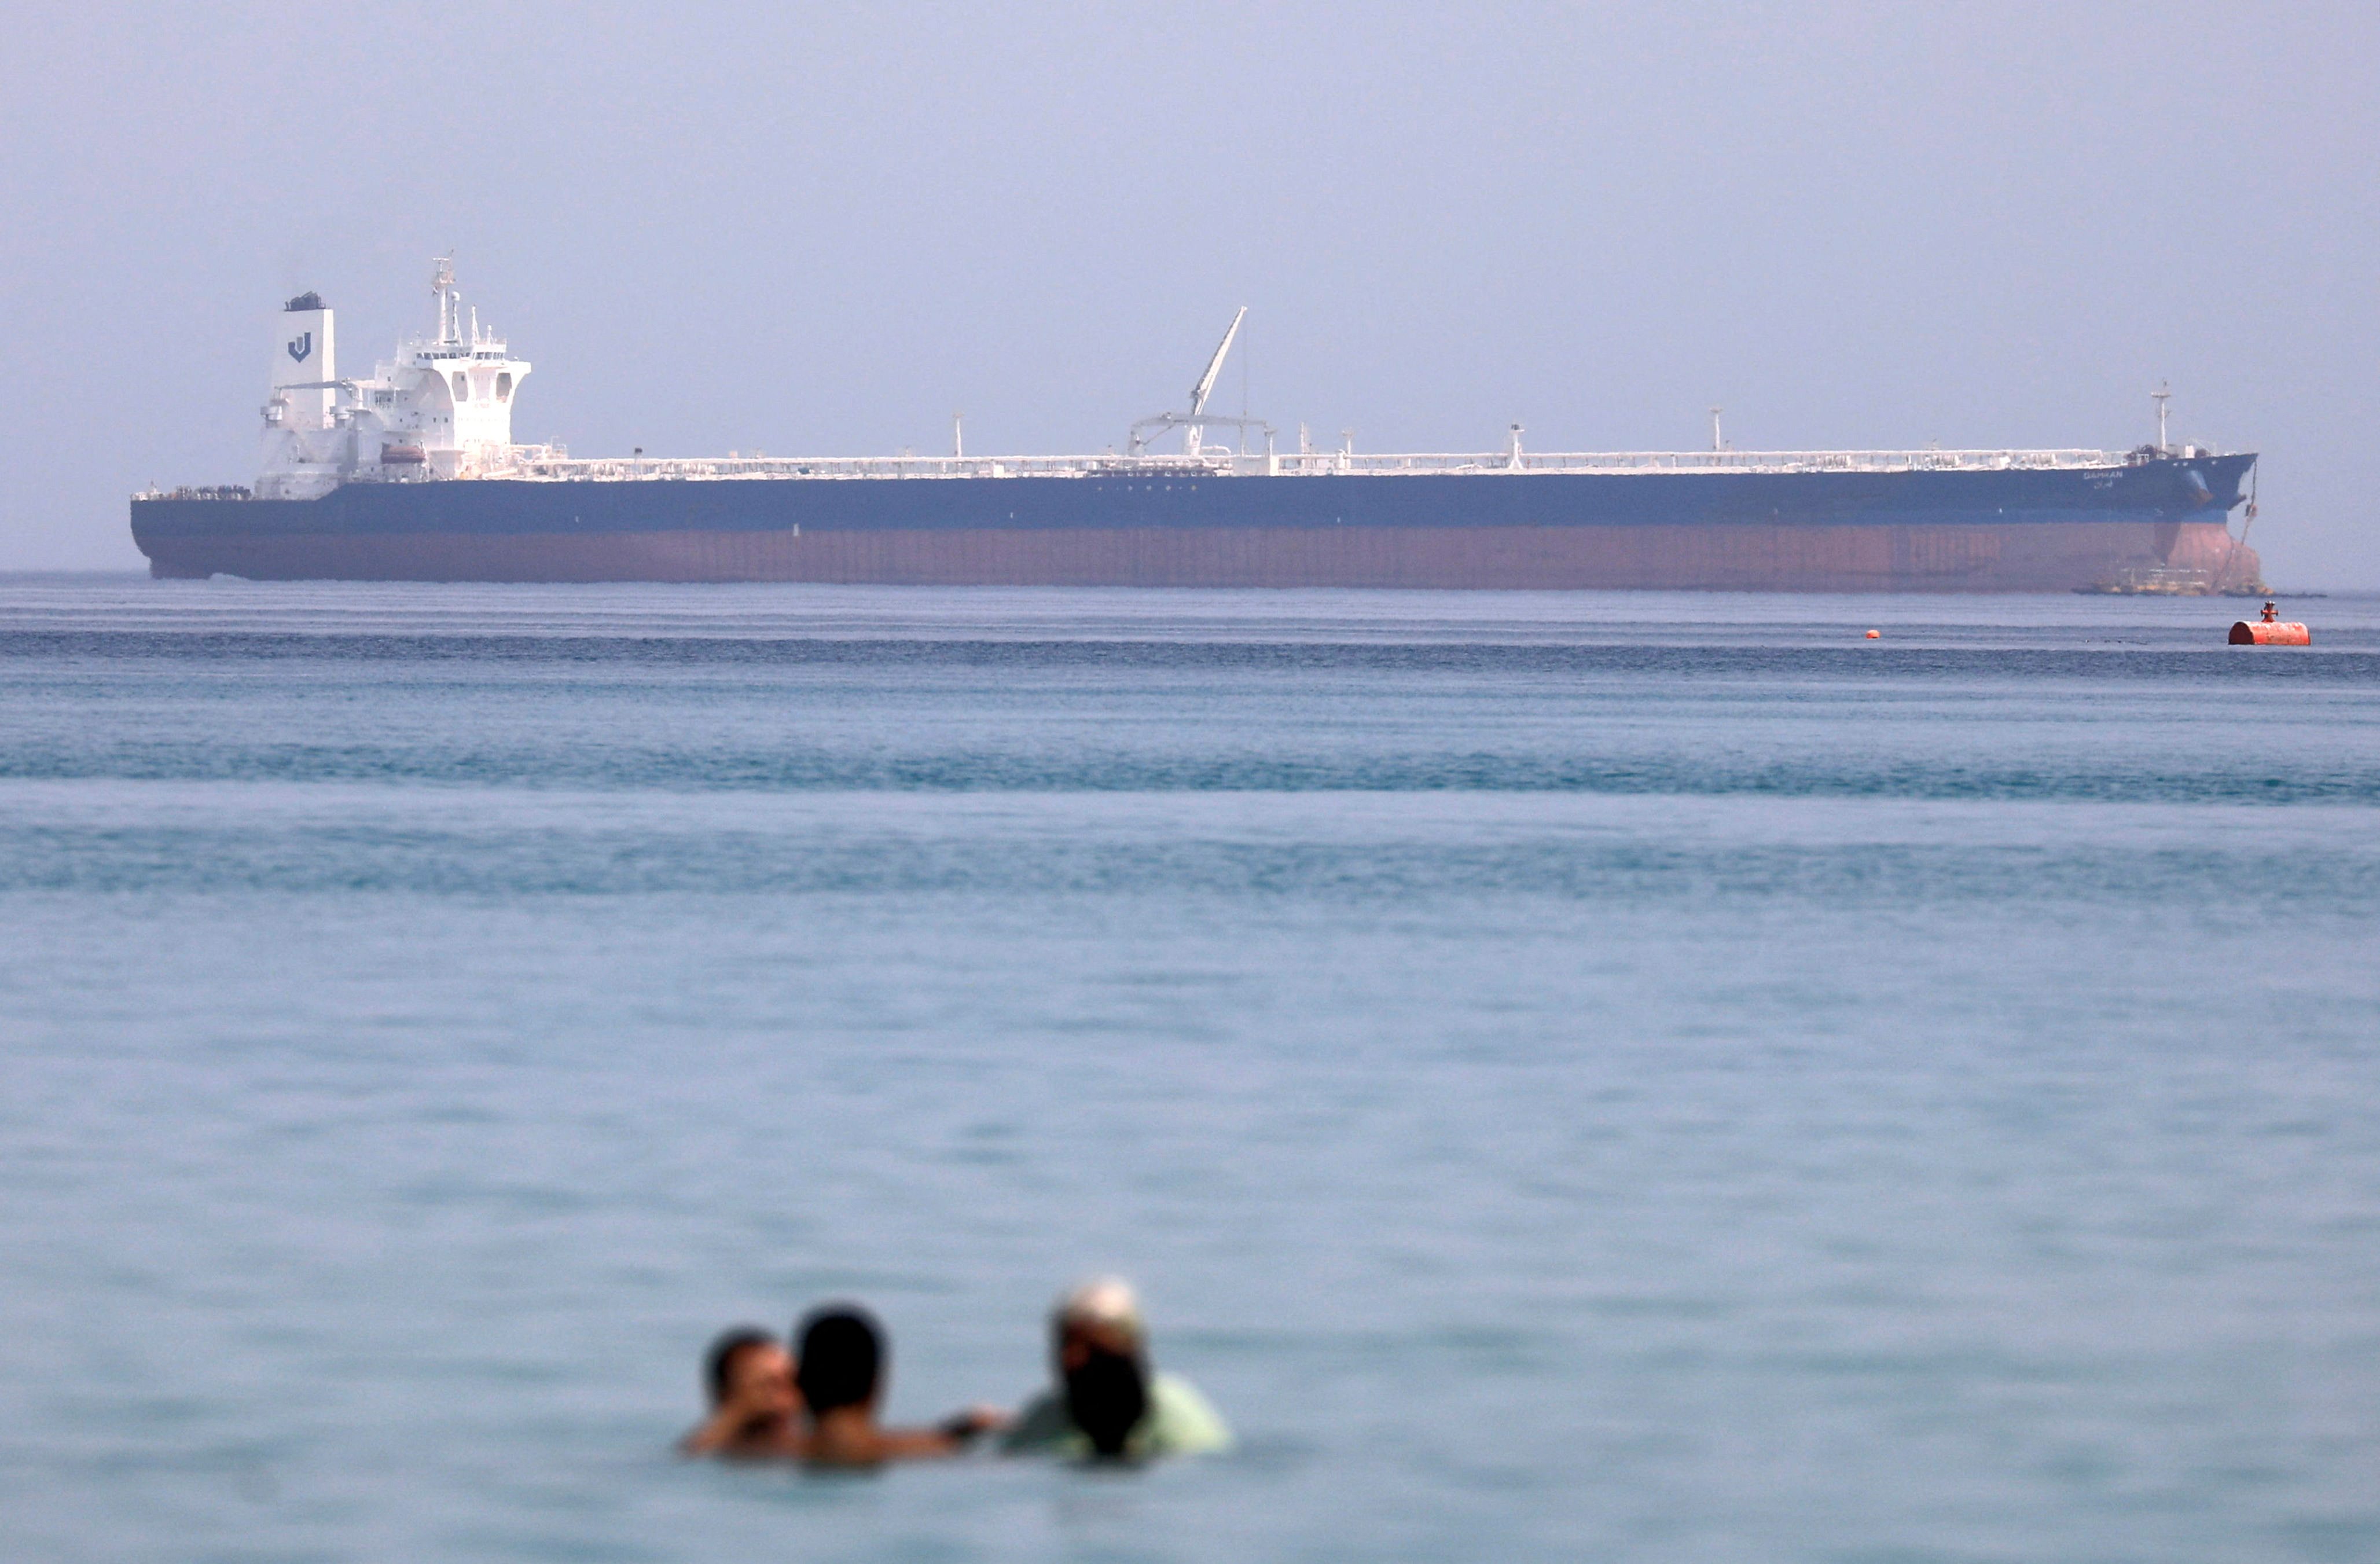 Red Sea oil tension may revive Russia-Saudi spat